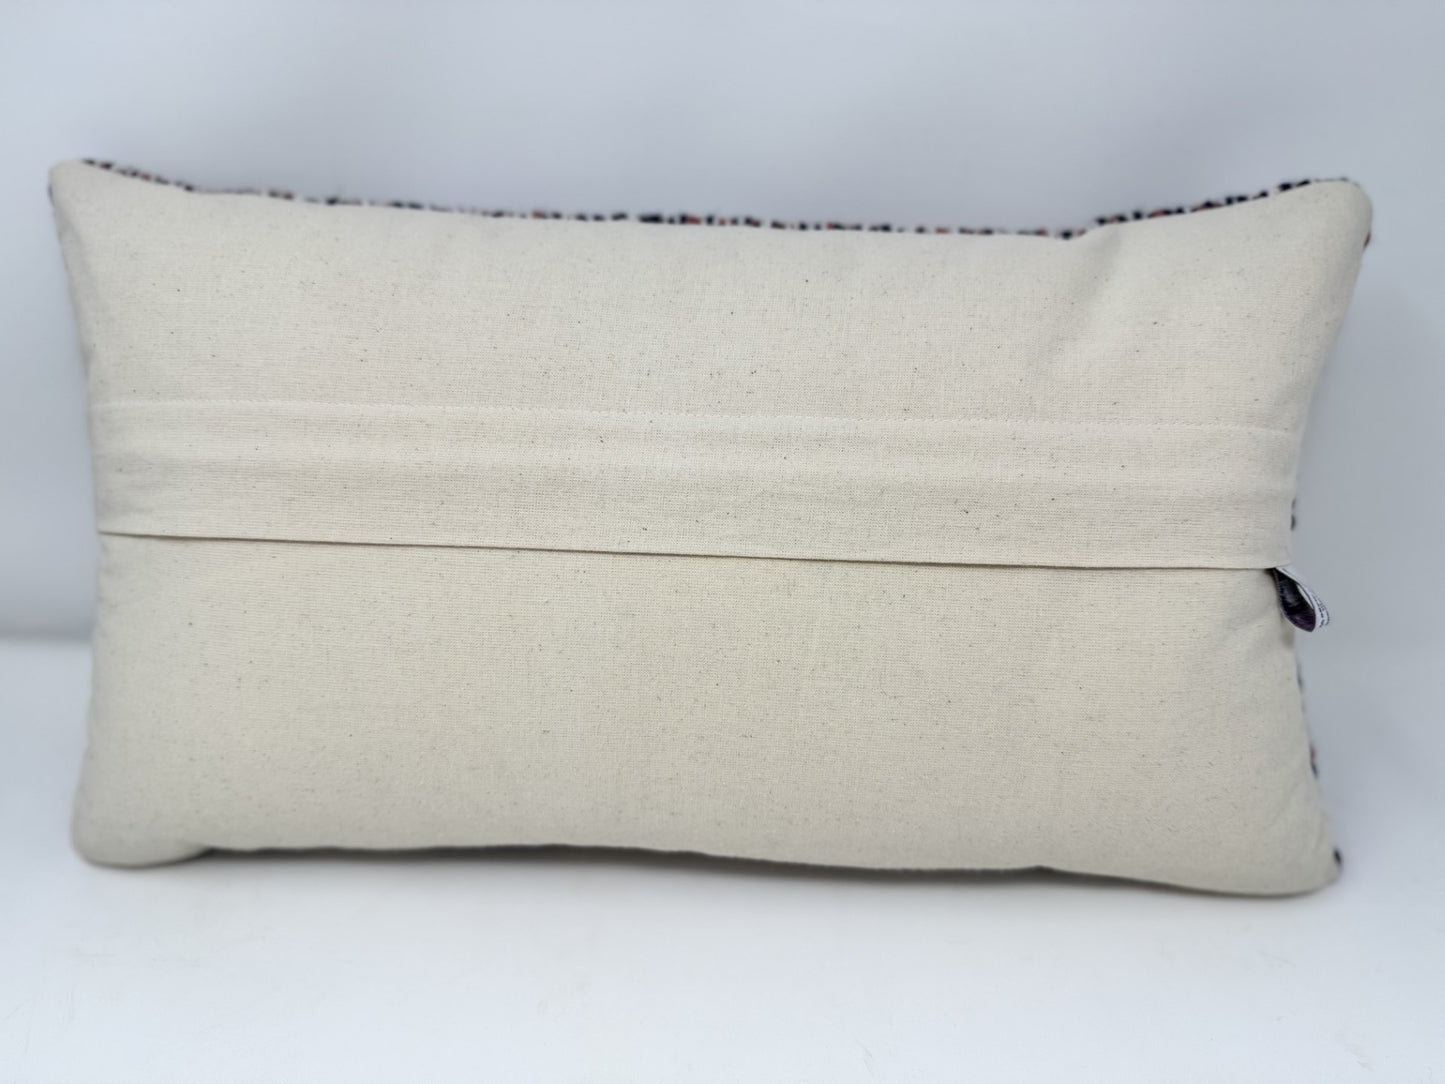 Hand-woven Cushion